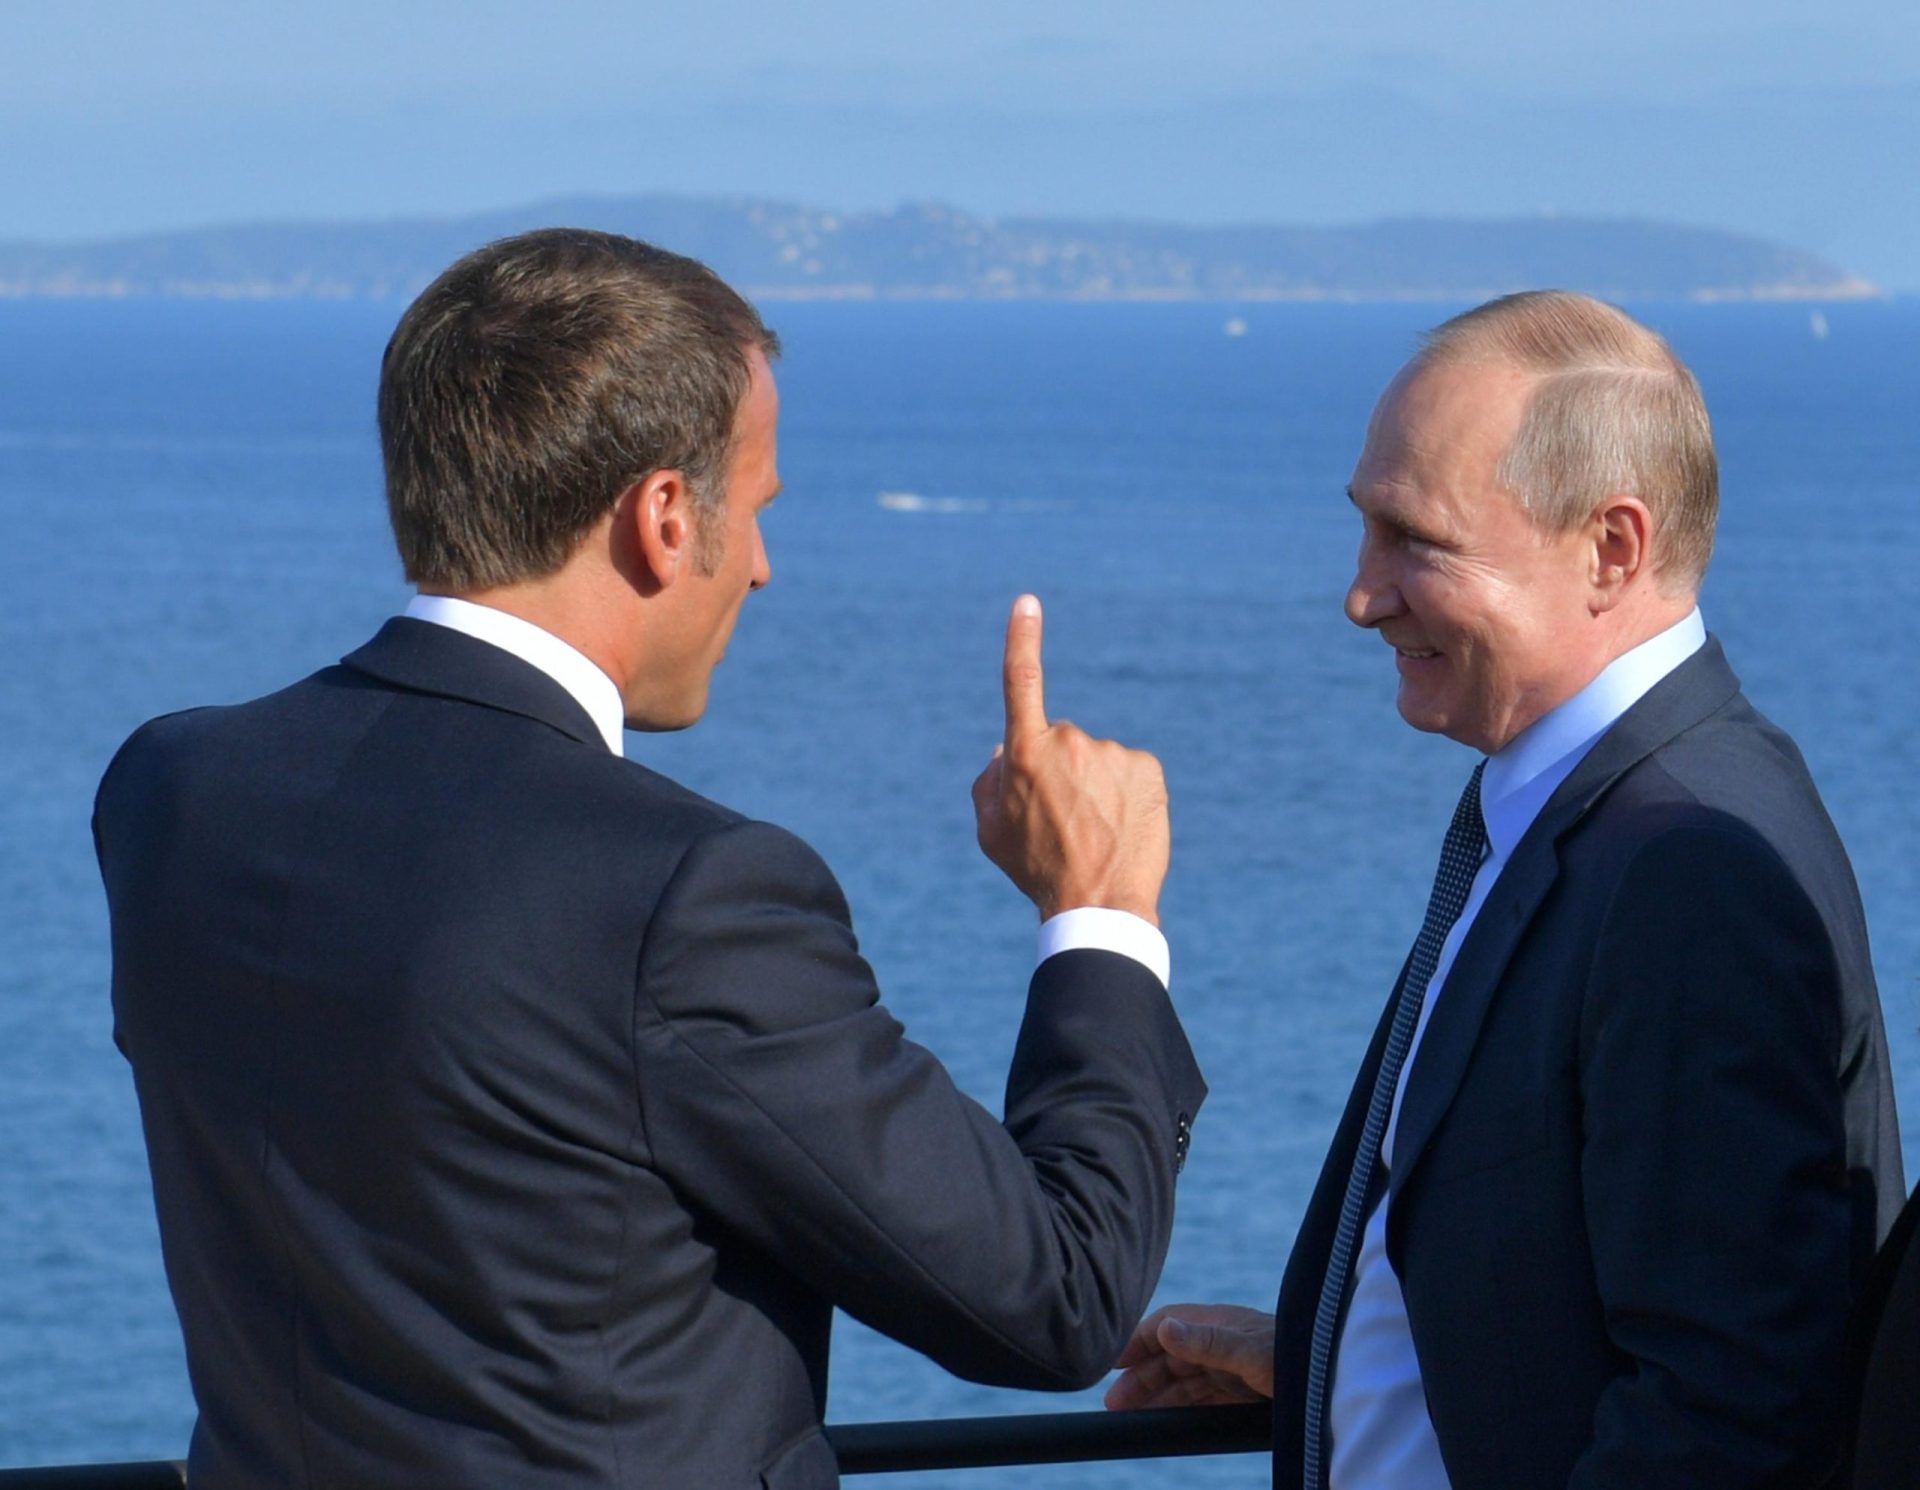 Macron mantiene una línea abierta con Putin mientras continúa la guerra en Ucrania